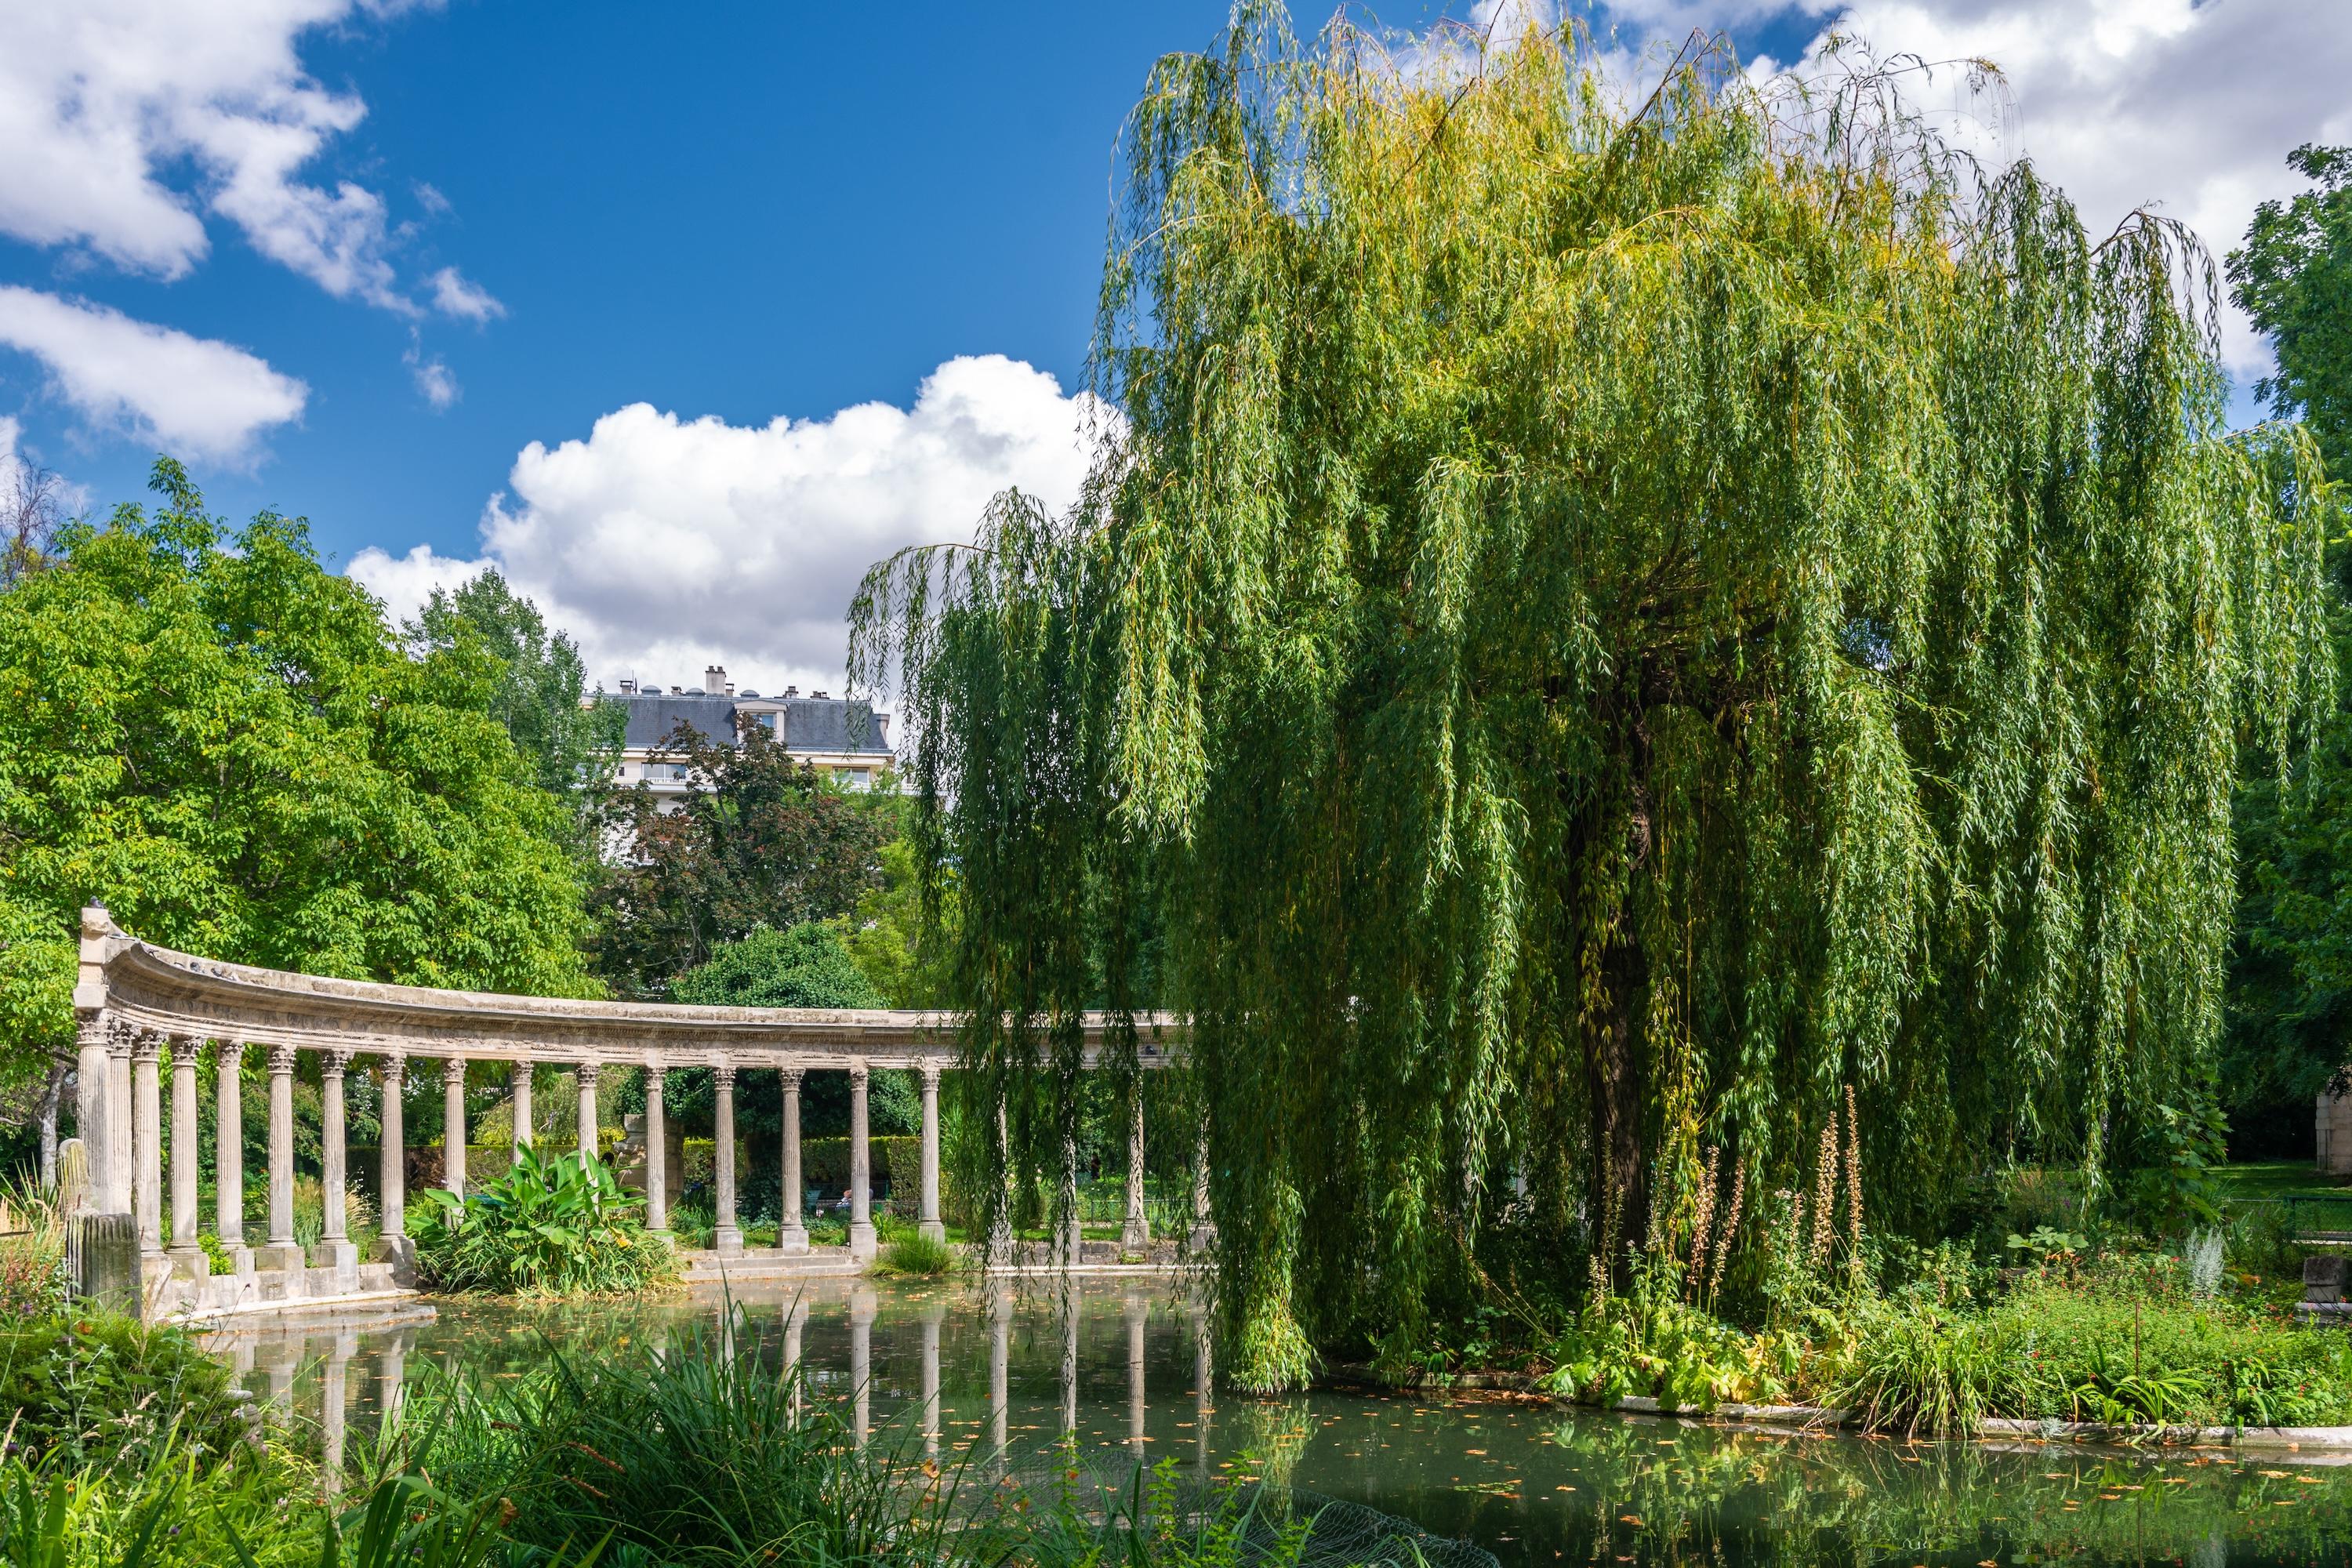 Green Getaway: Parisian Parks and the “Jardins, jardin!” Event